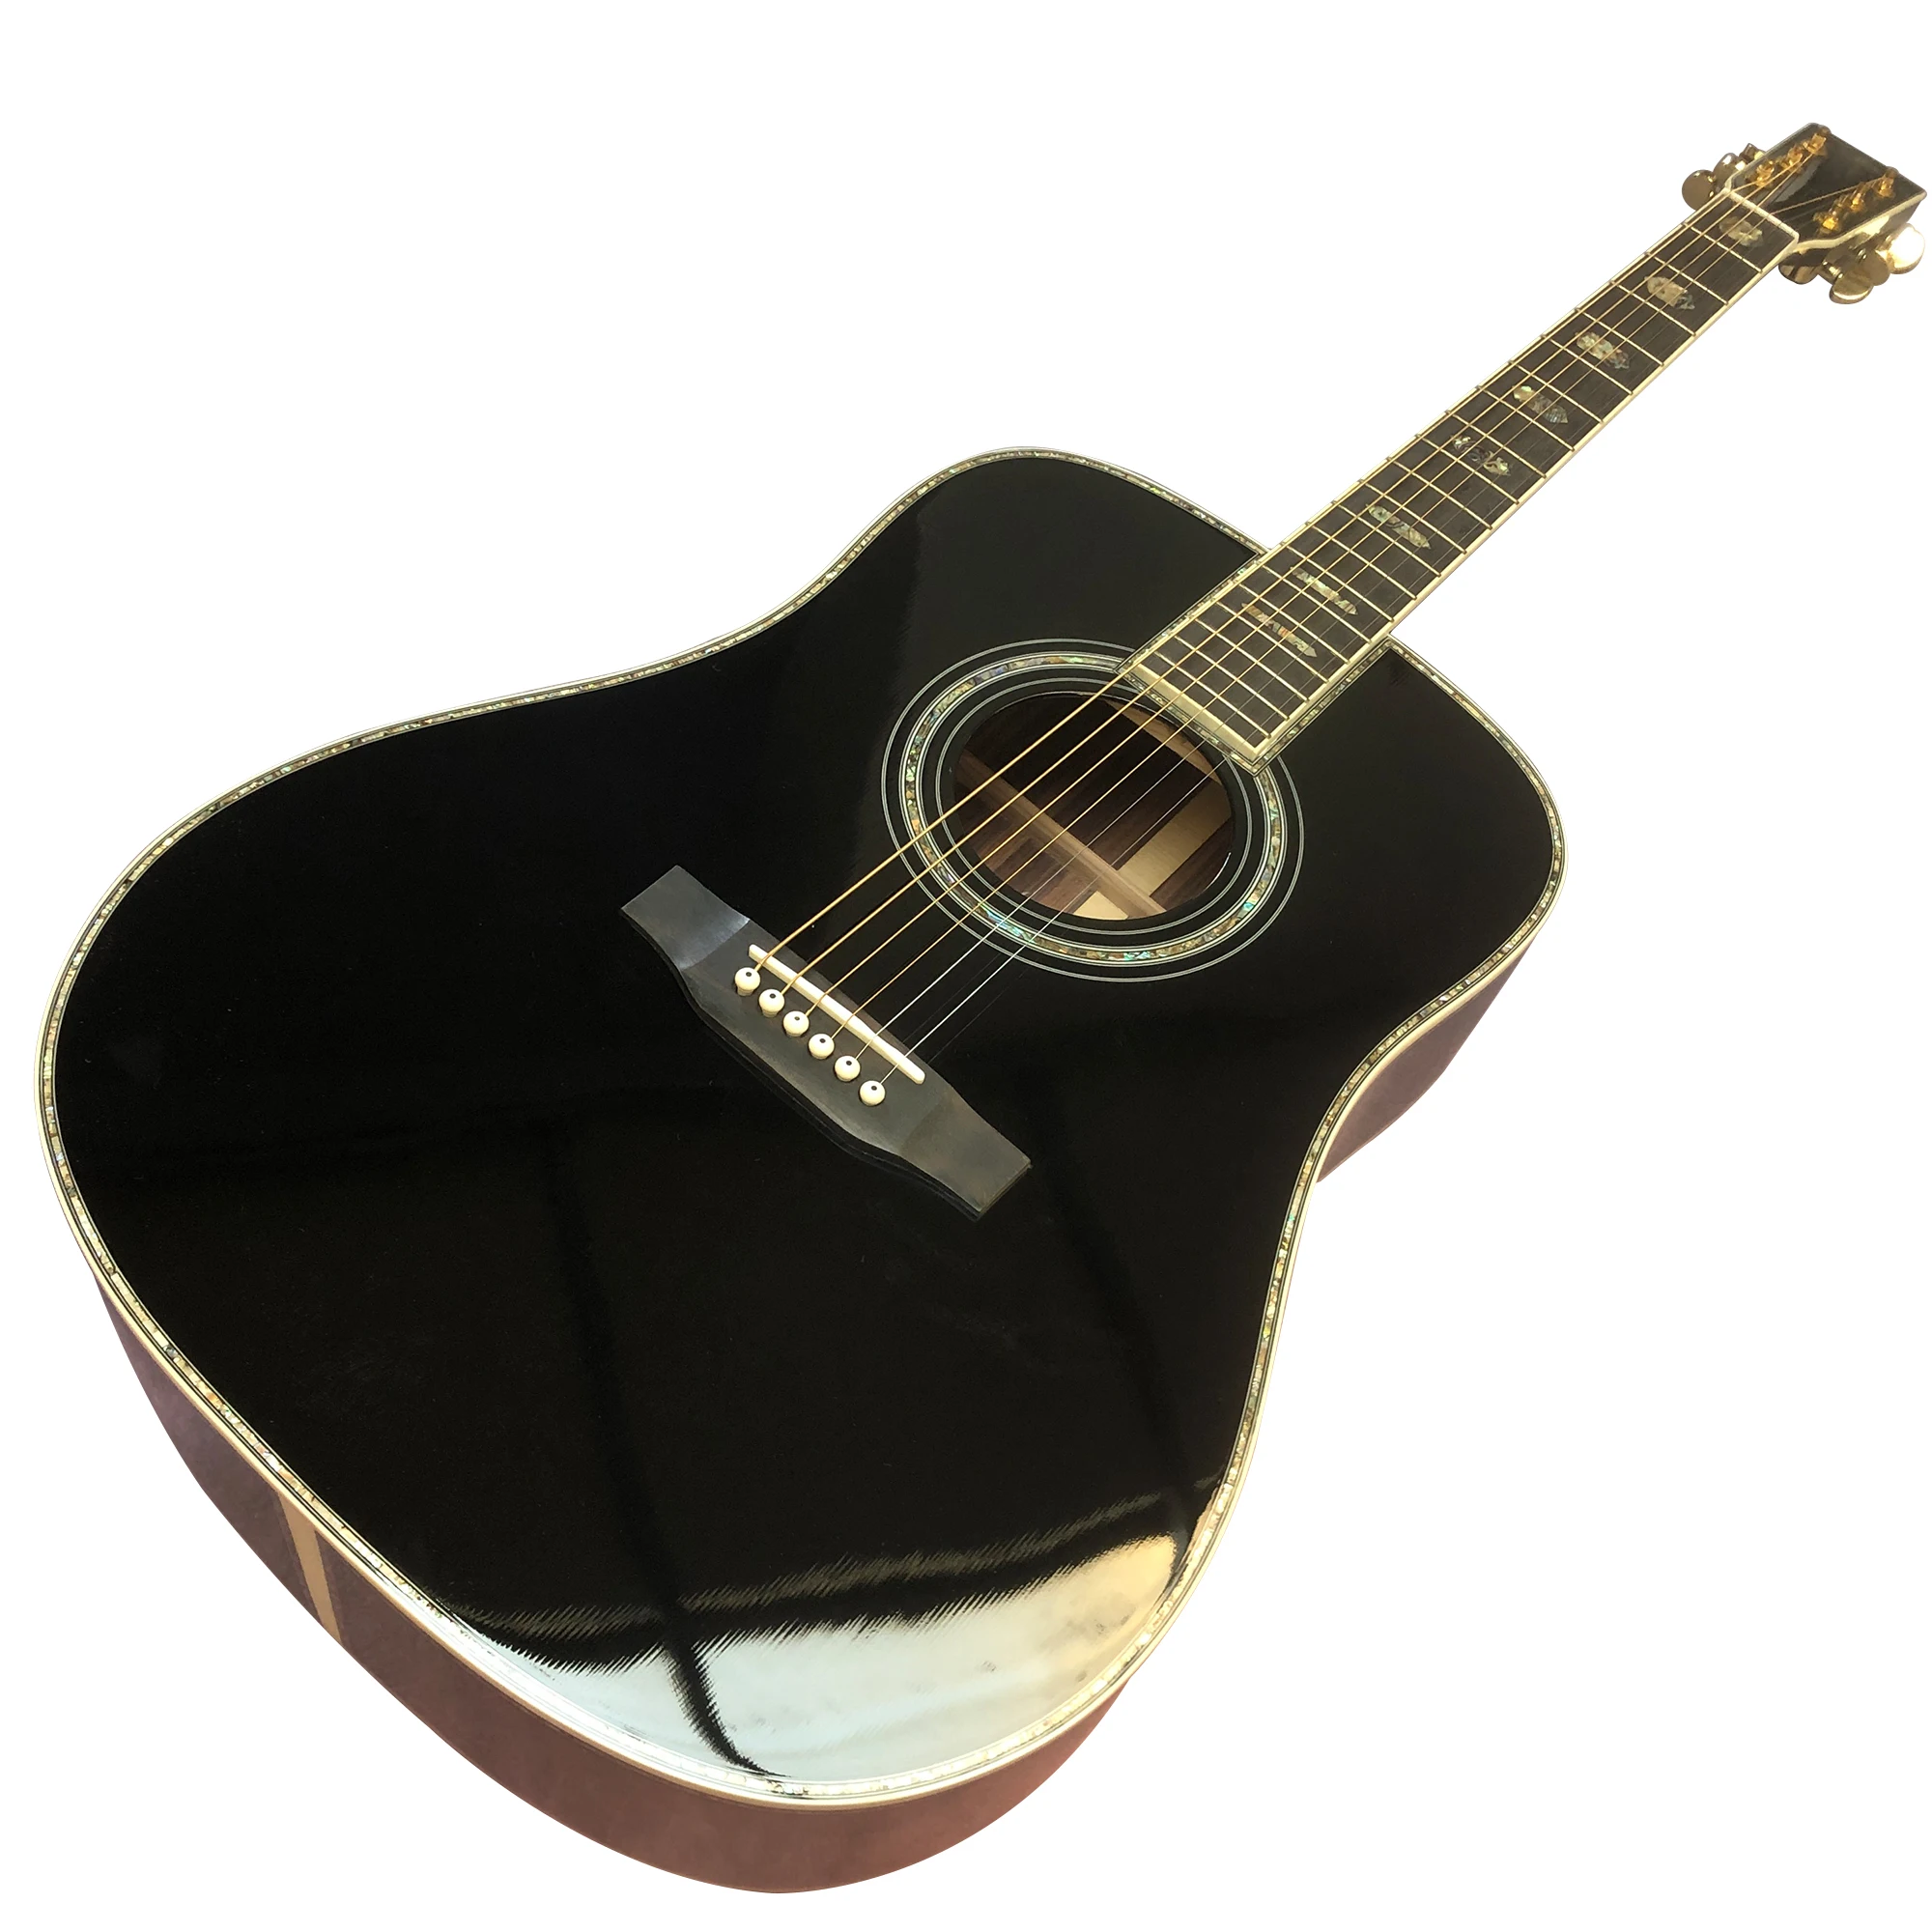 

41 дюймовая форма D45 BK окрашенная настоящая Абалон инкрустированная черным пальцем Акустическая гитара